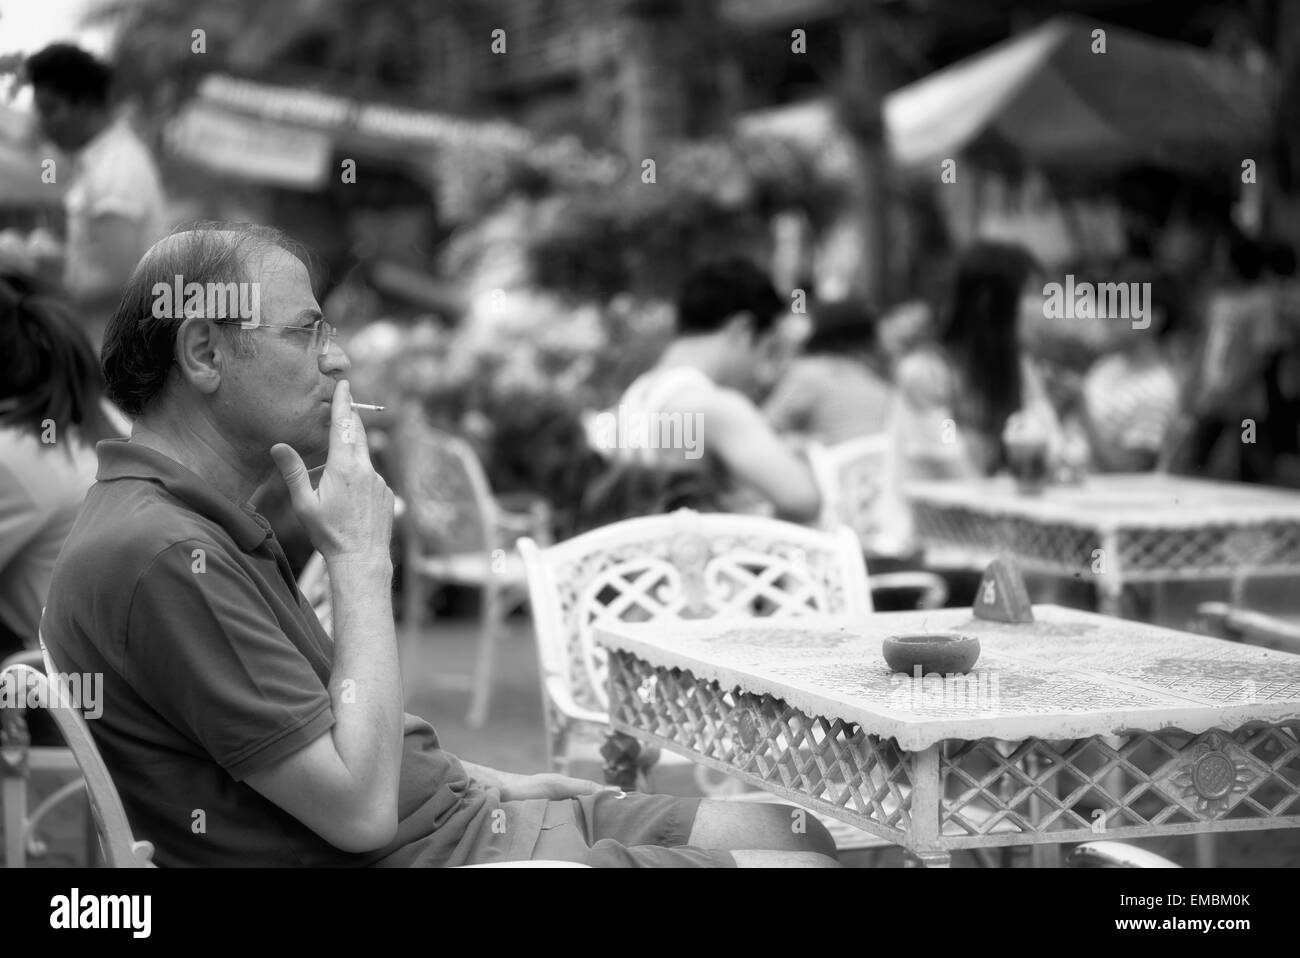 L'homme fume une cigarette et assis seul à une table de café en bordure de route. Photographie noir et blanc Banque D'Images